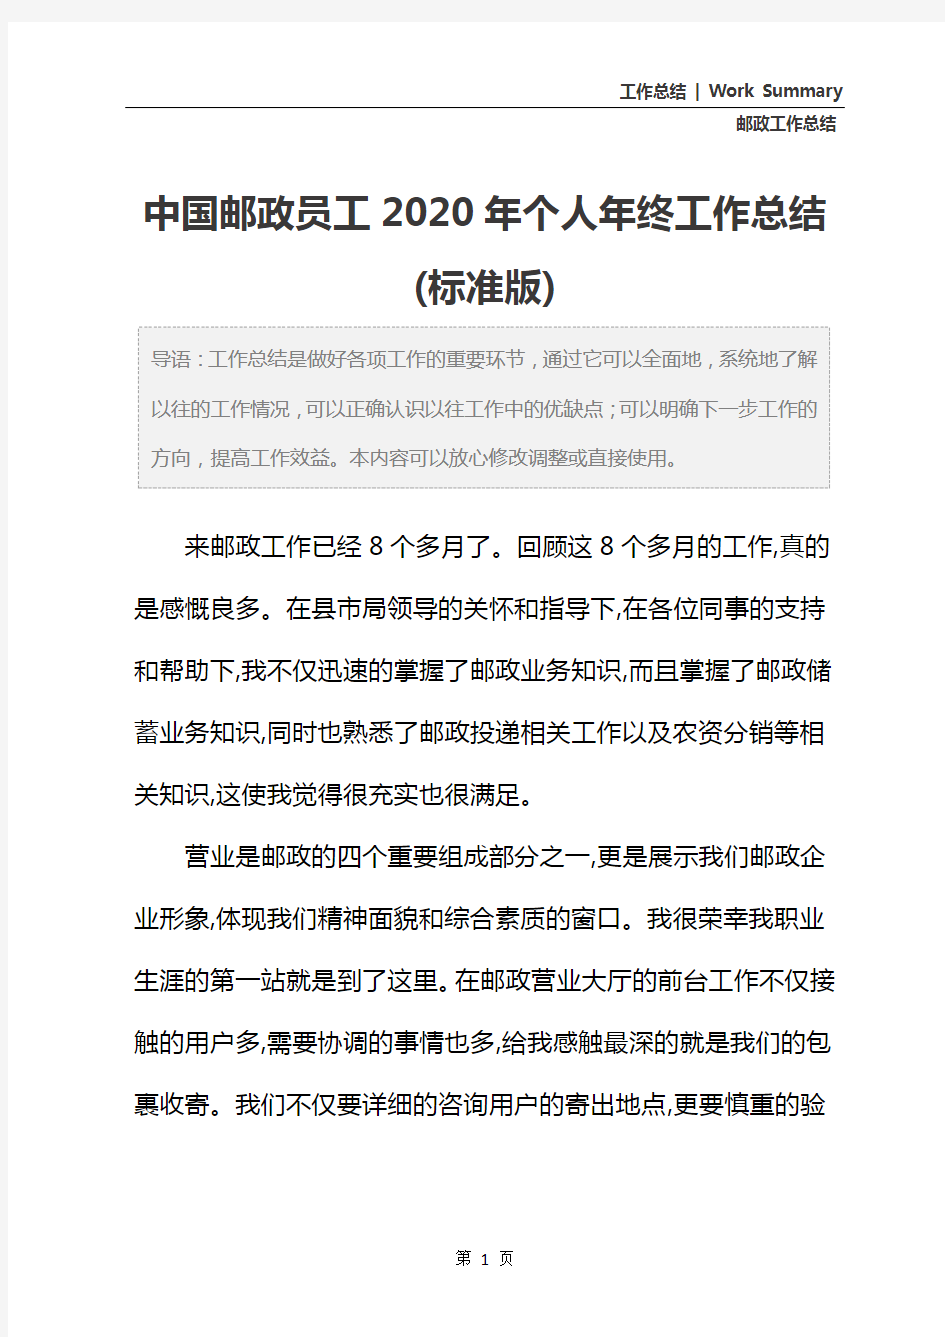 中国邮政员工2020年个人年终工作总结(标准版)